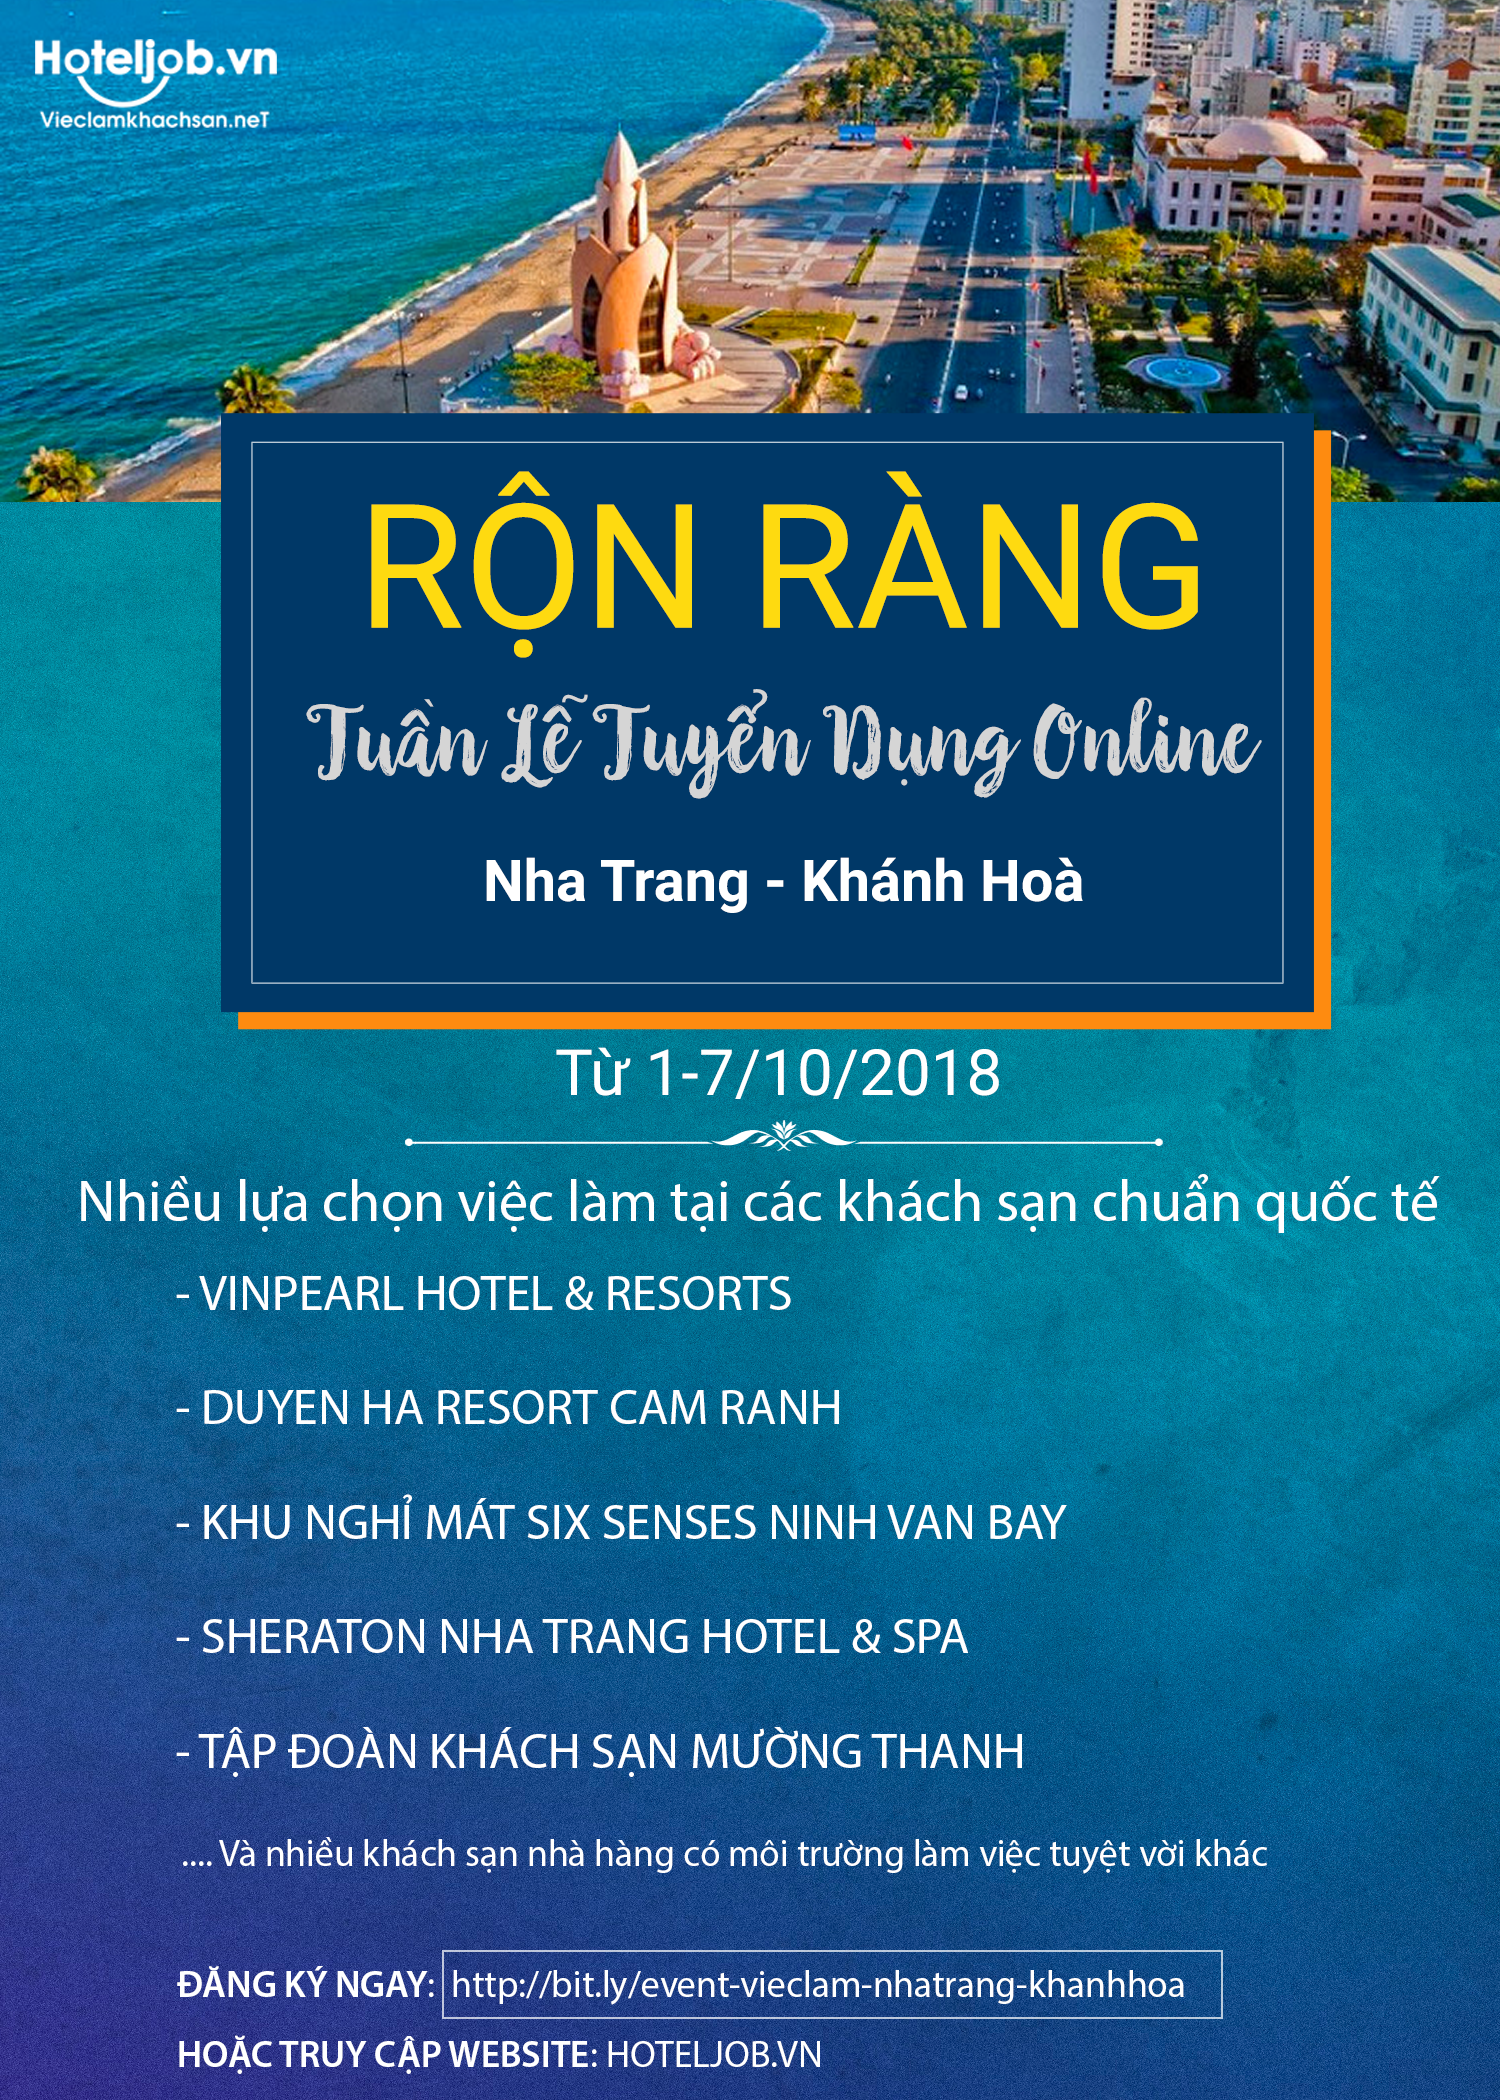 Tuần lễ tuyển dụng online Nha Trang – Khánh Hòa